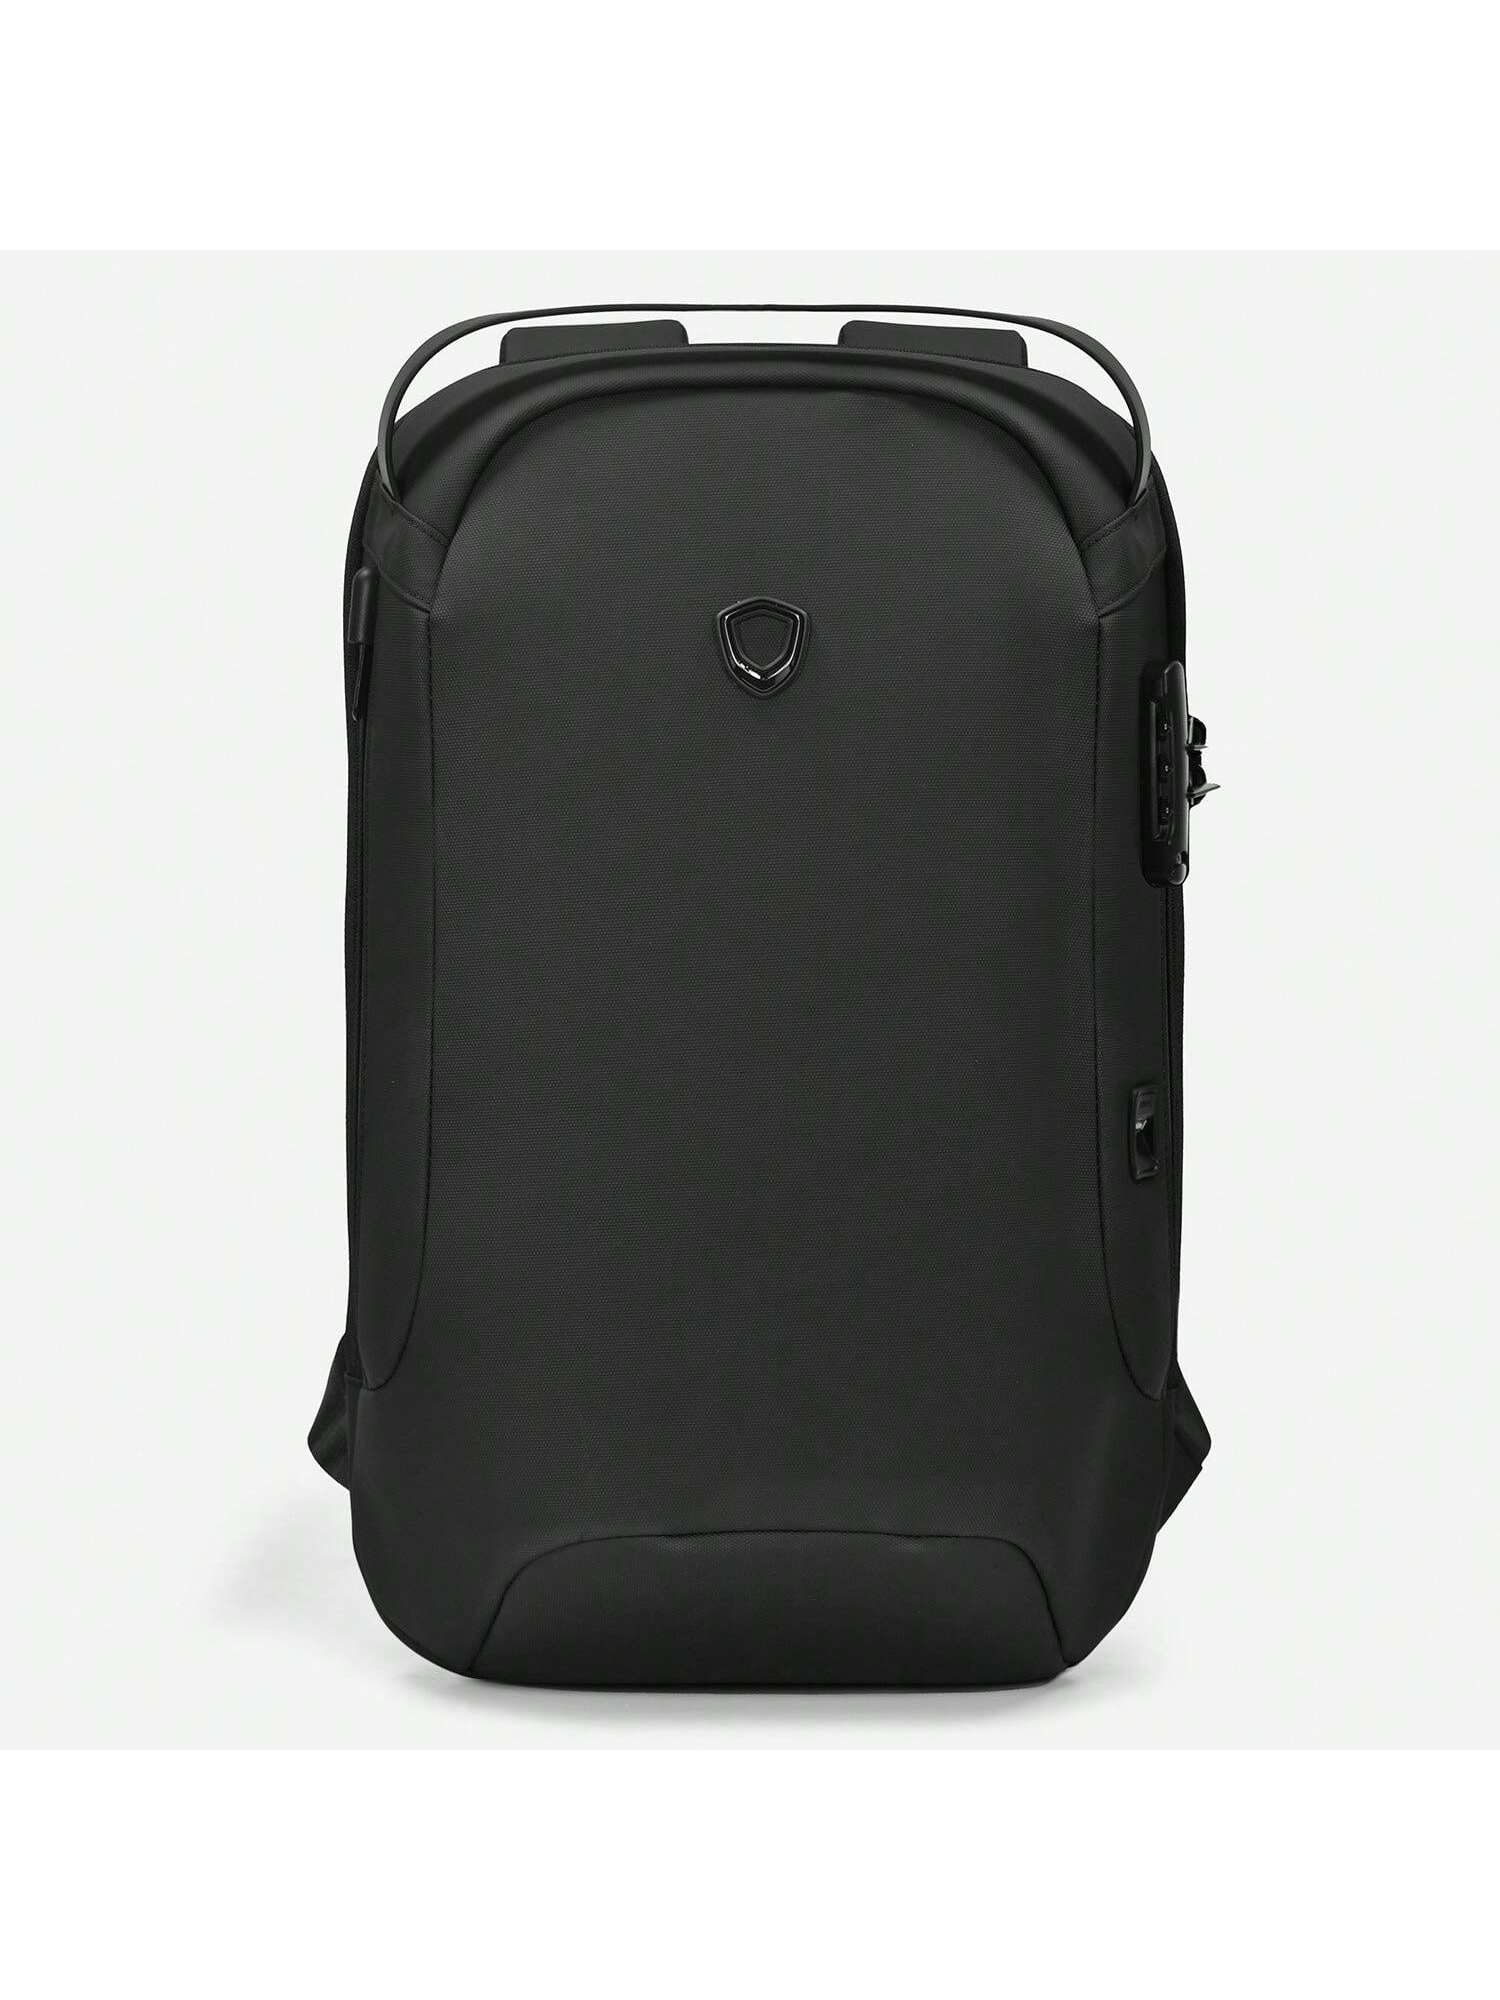 Матовый водостойкий рюкзак Frailey с USB-портом и кодовым замком, черный рюкзак рик и морти черный с usb портом 3